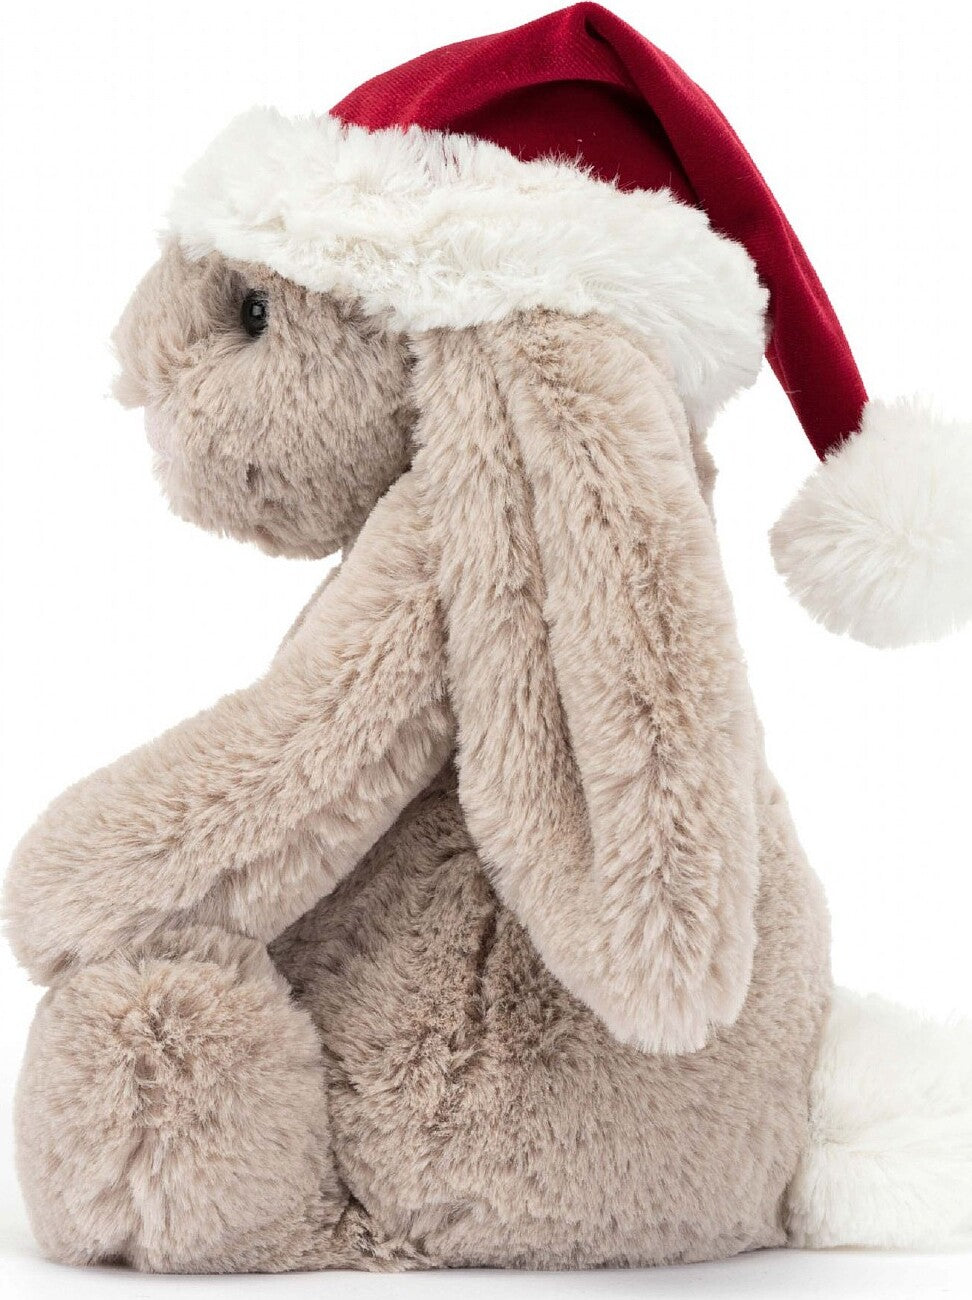 Bashful Christmas Bunny